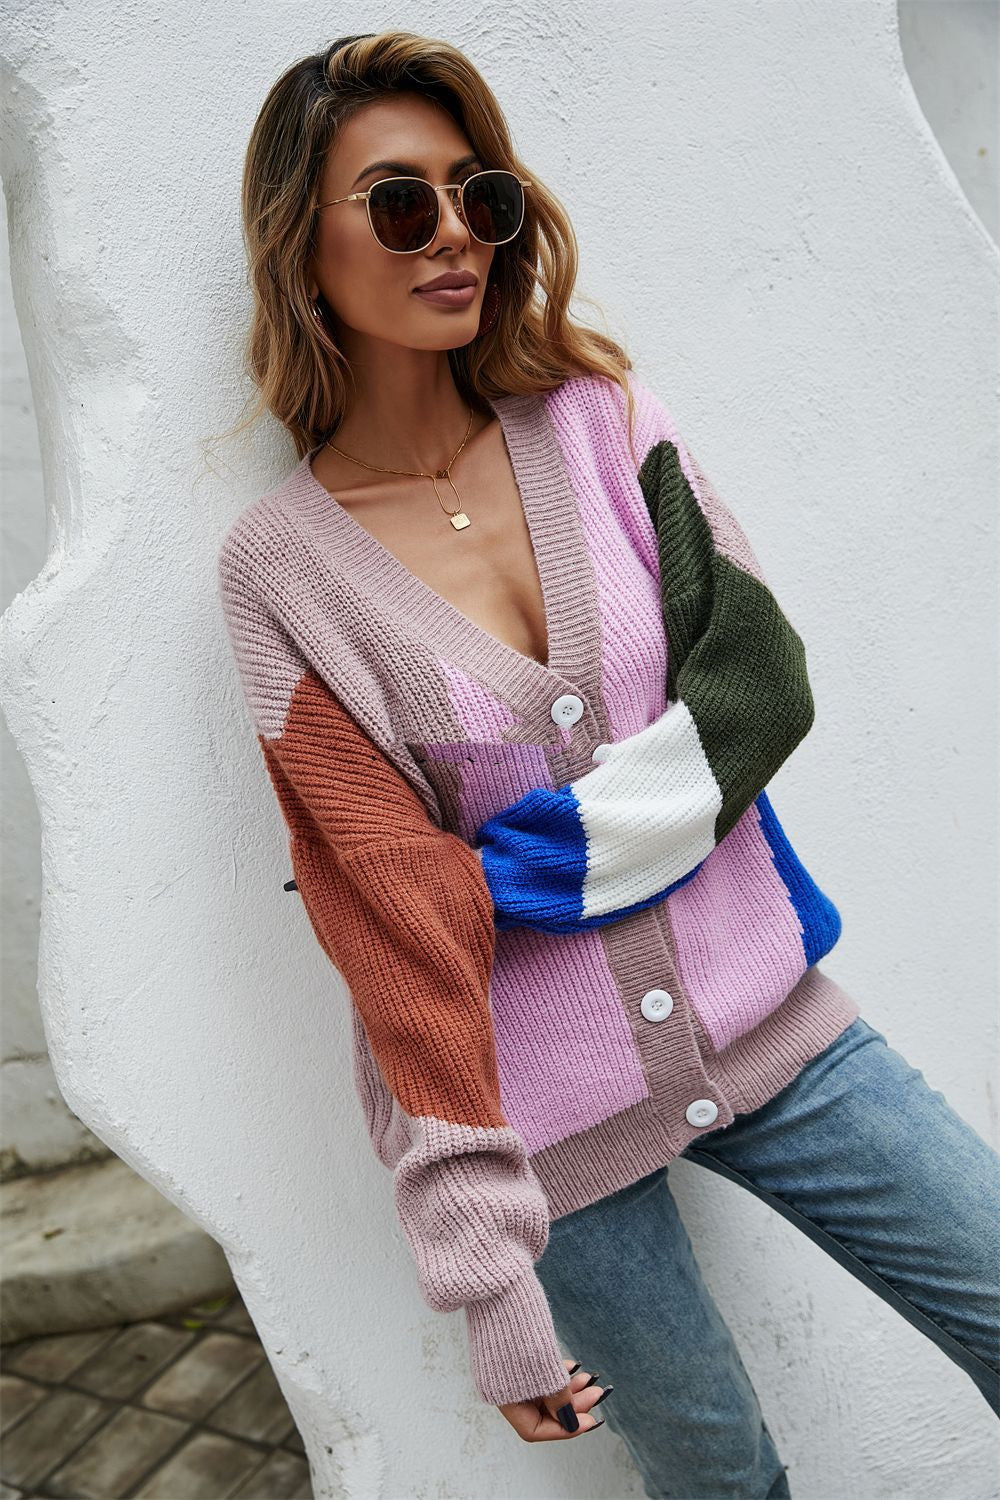 Stitching Personality Fashion Plus Size Sweater